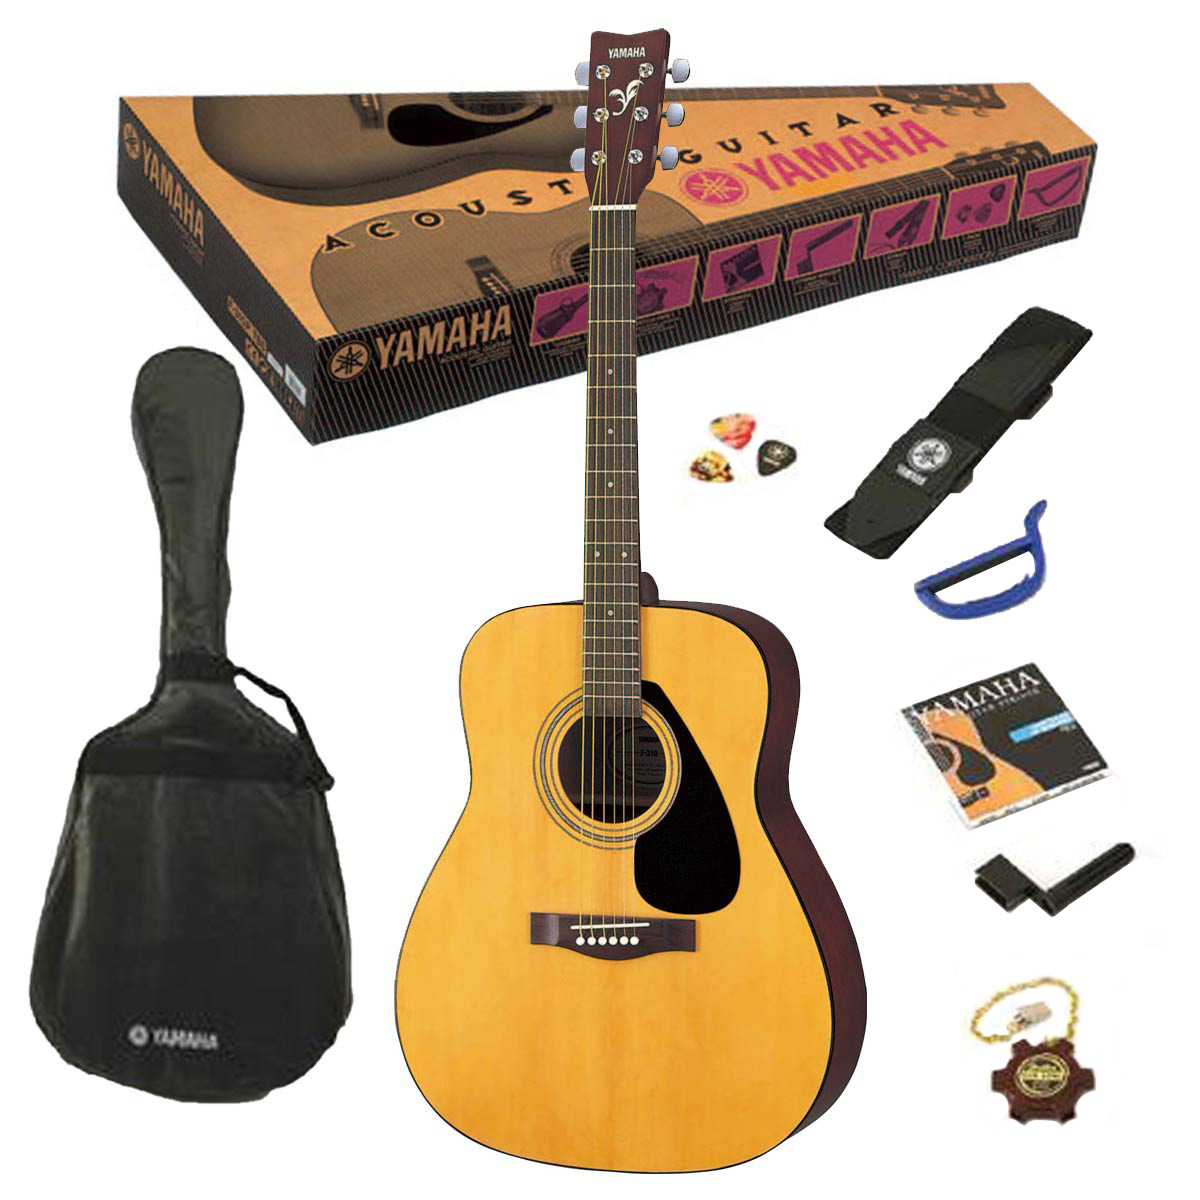 Yamaha F310P - акустическая гитара, в комплекте чехол, ремень, медиаторы, струны, камертон,каподастр